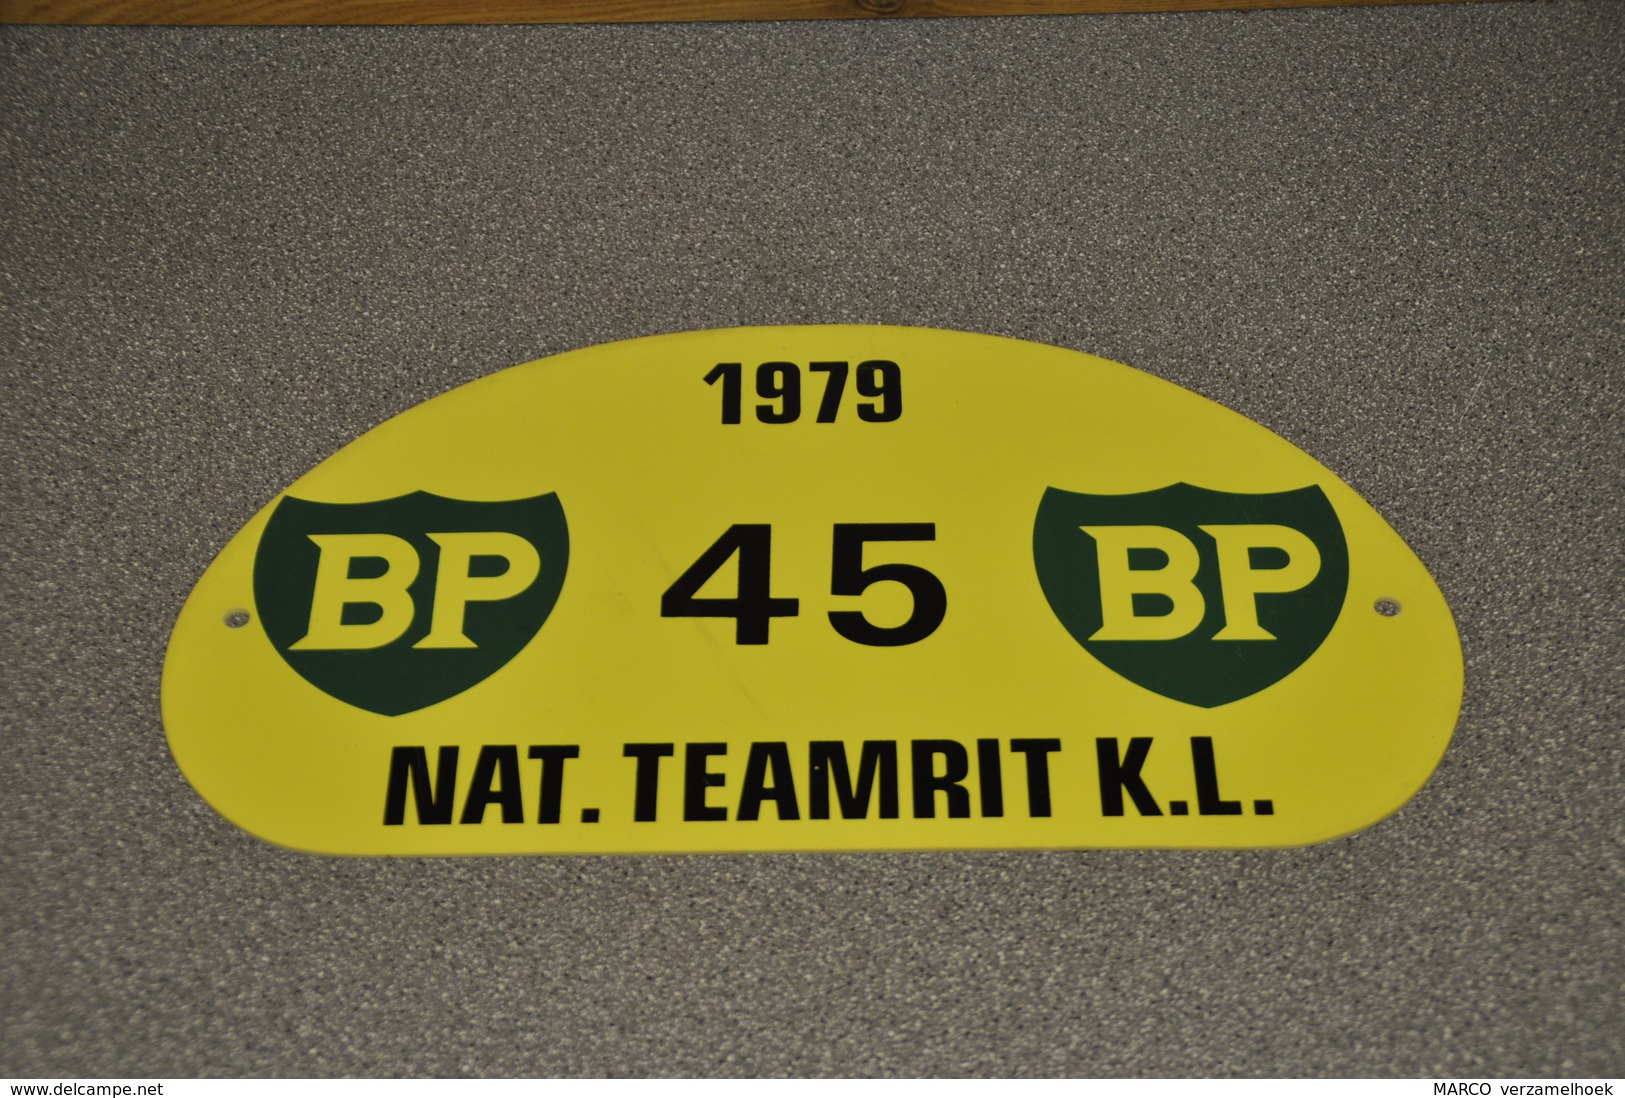 Rally Plaat-rallye Plaque Plastic: Nat. Teamrit K.L. 1979 BP - Plaques De Rallye